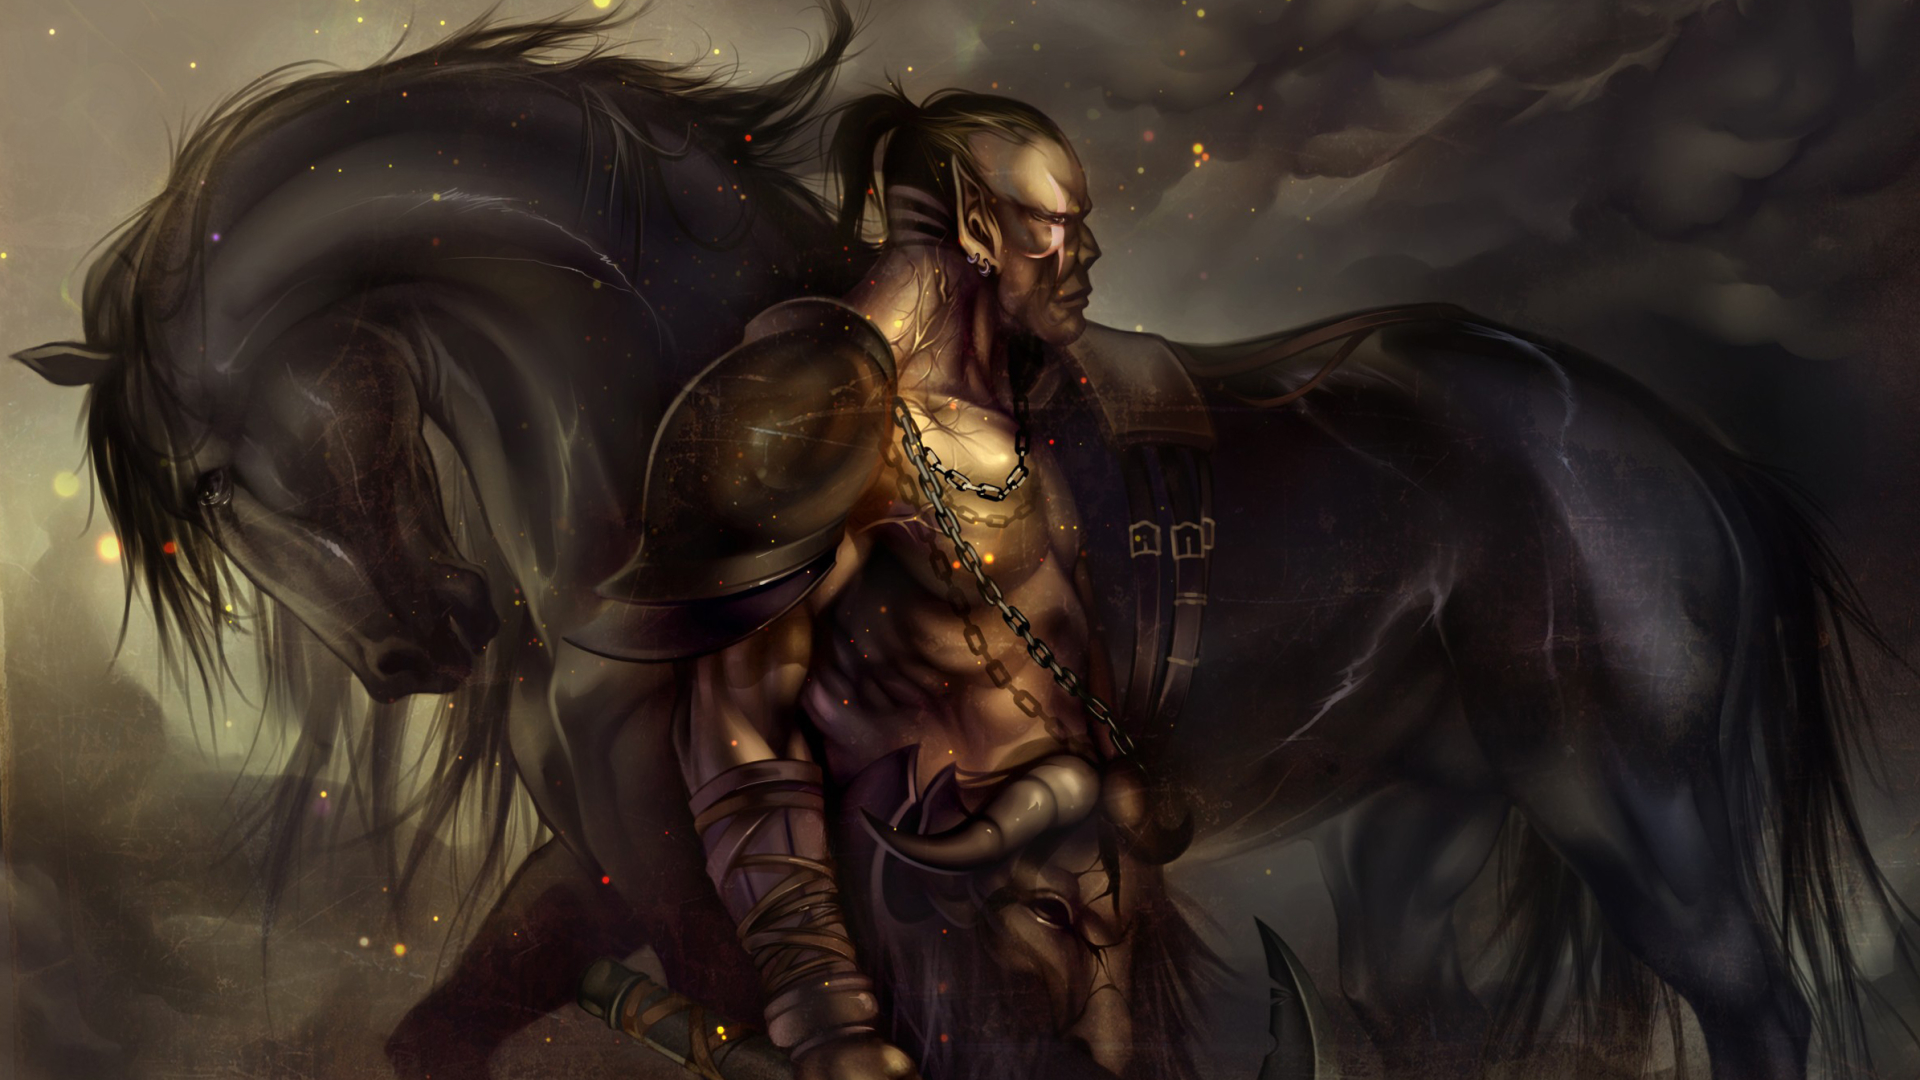 General 1920x1080 digital art warrior fantasy art Orc horse